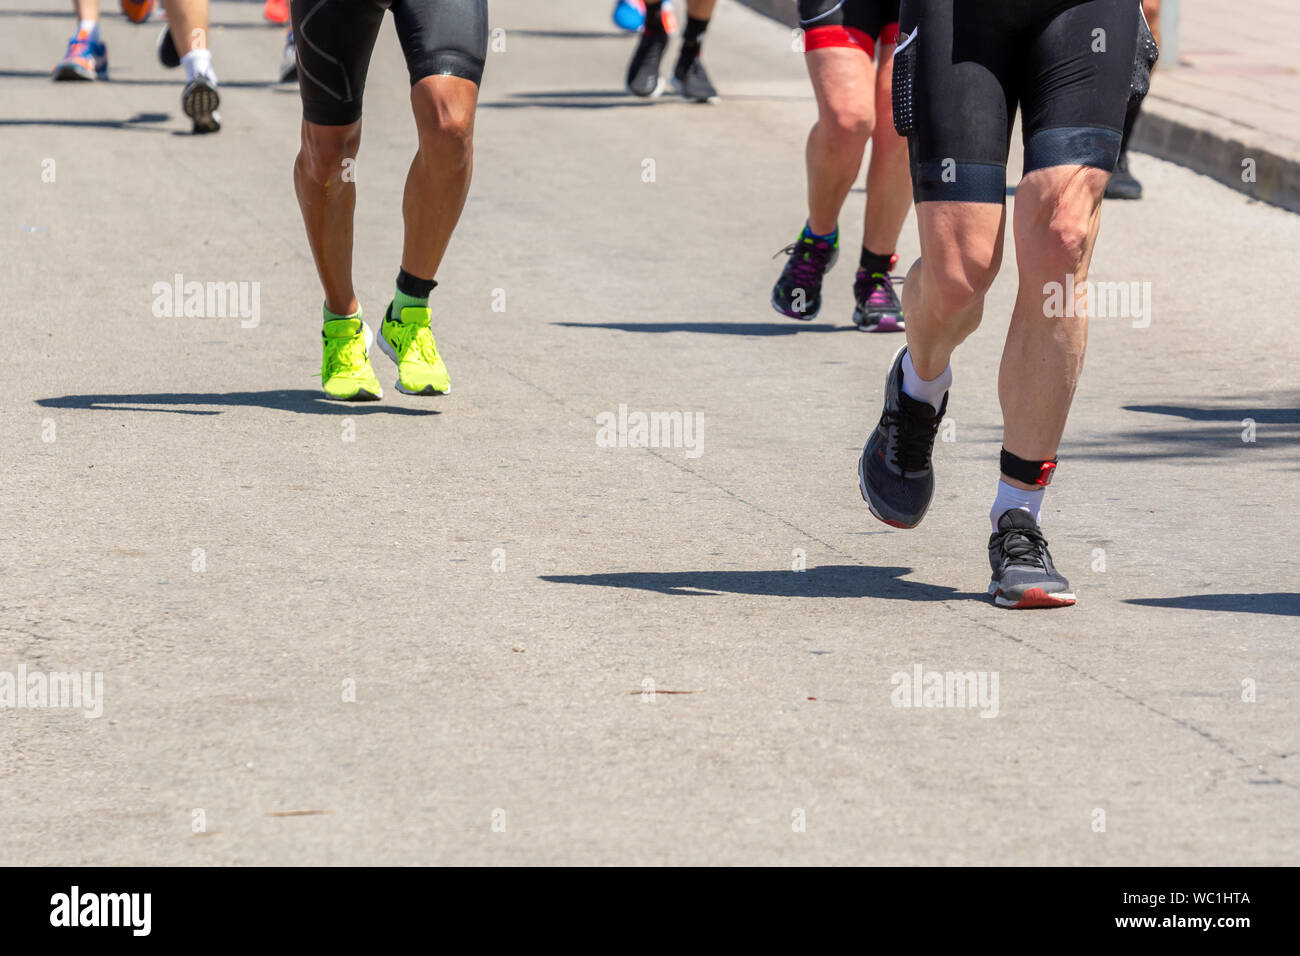 Marathon Running Race People Feet On City Road Stock Photo Alamy